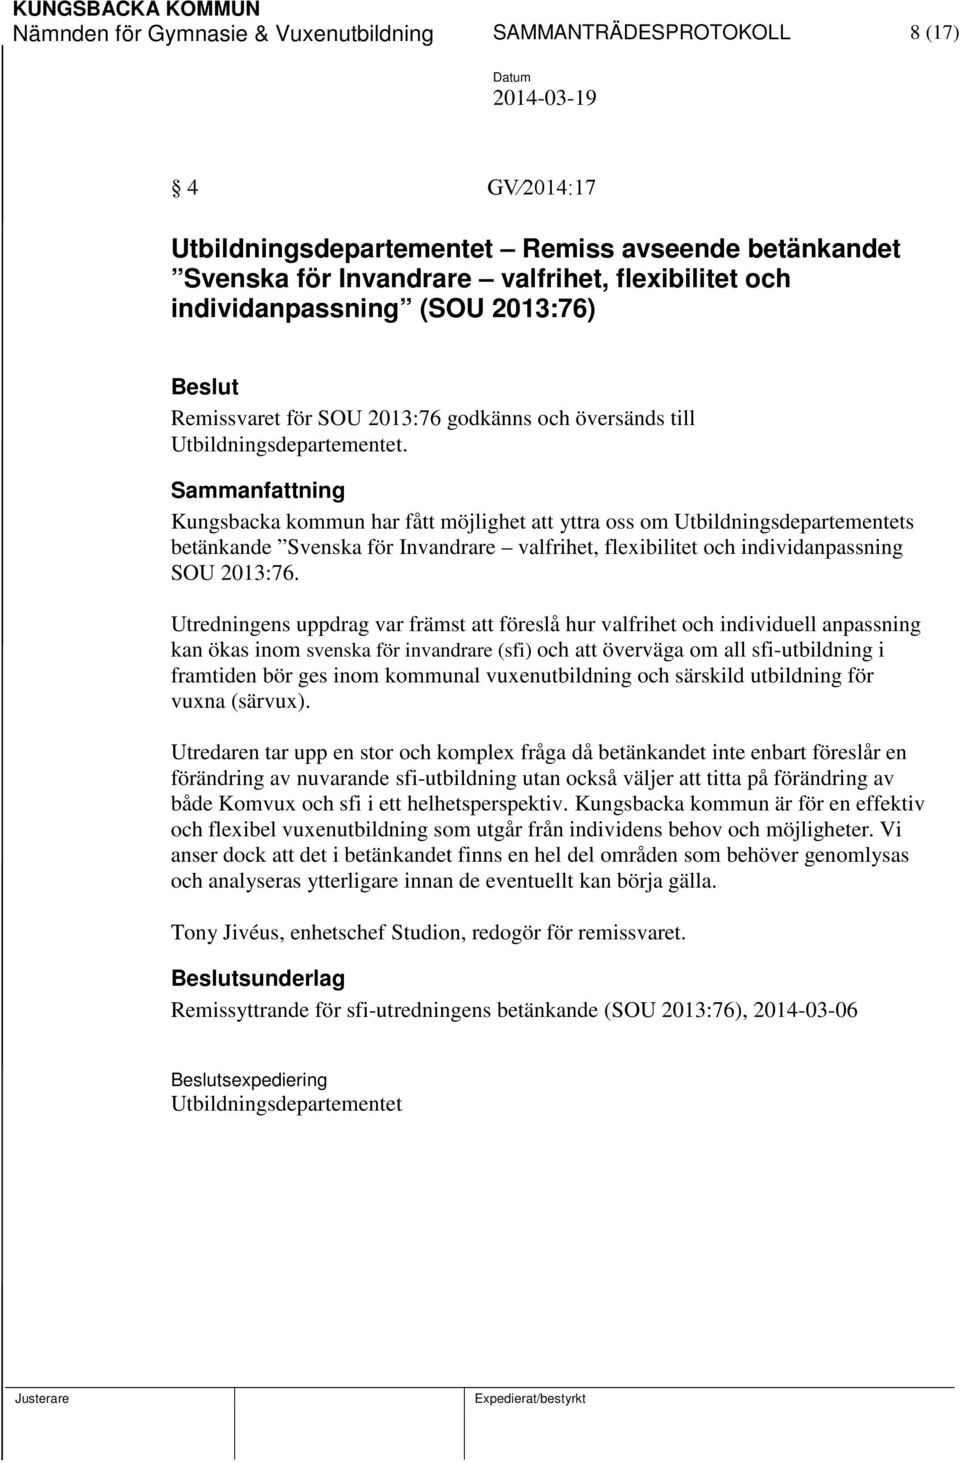 Kungsbacka kommun har fått möjlighet att yttra oss om Utbildningsdepartementets betänkande Svenska för Invandrare valfrihet, flexibilitet och individanpassning SOU 2013:76.